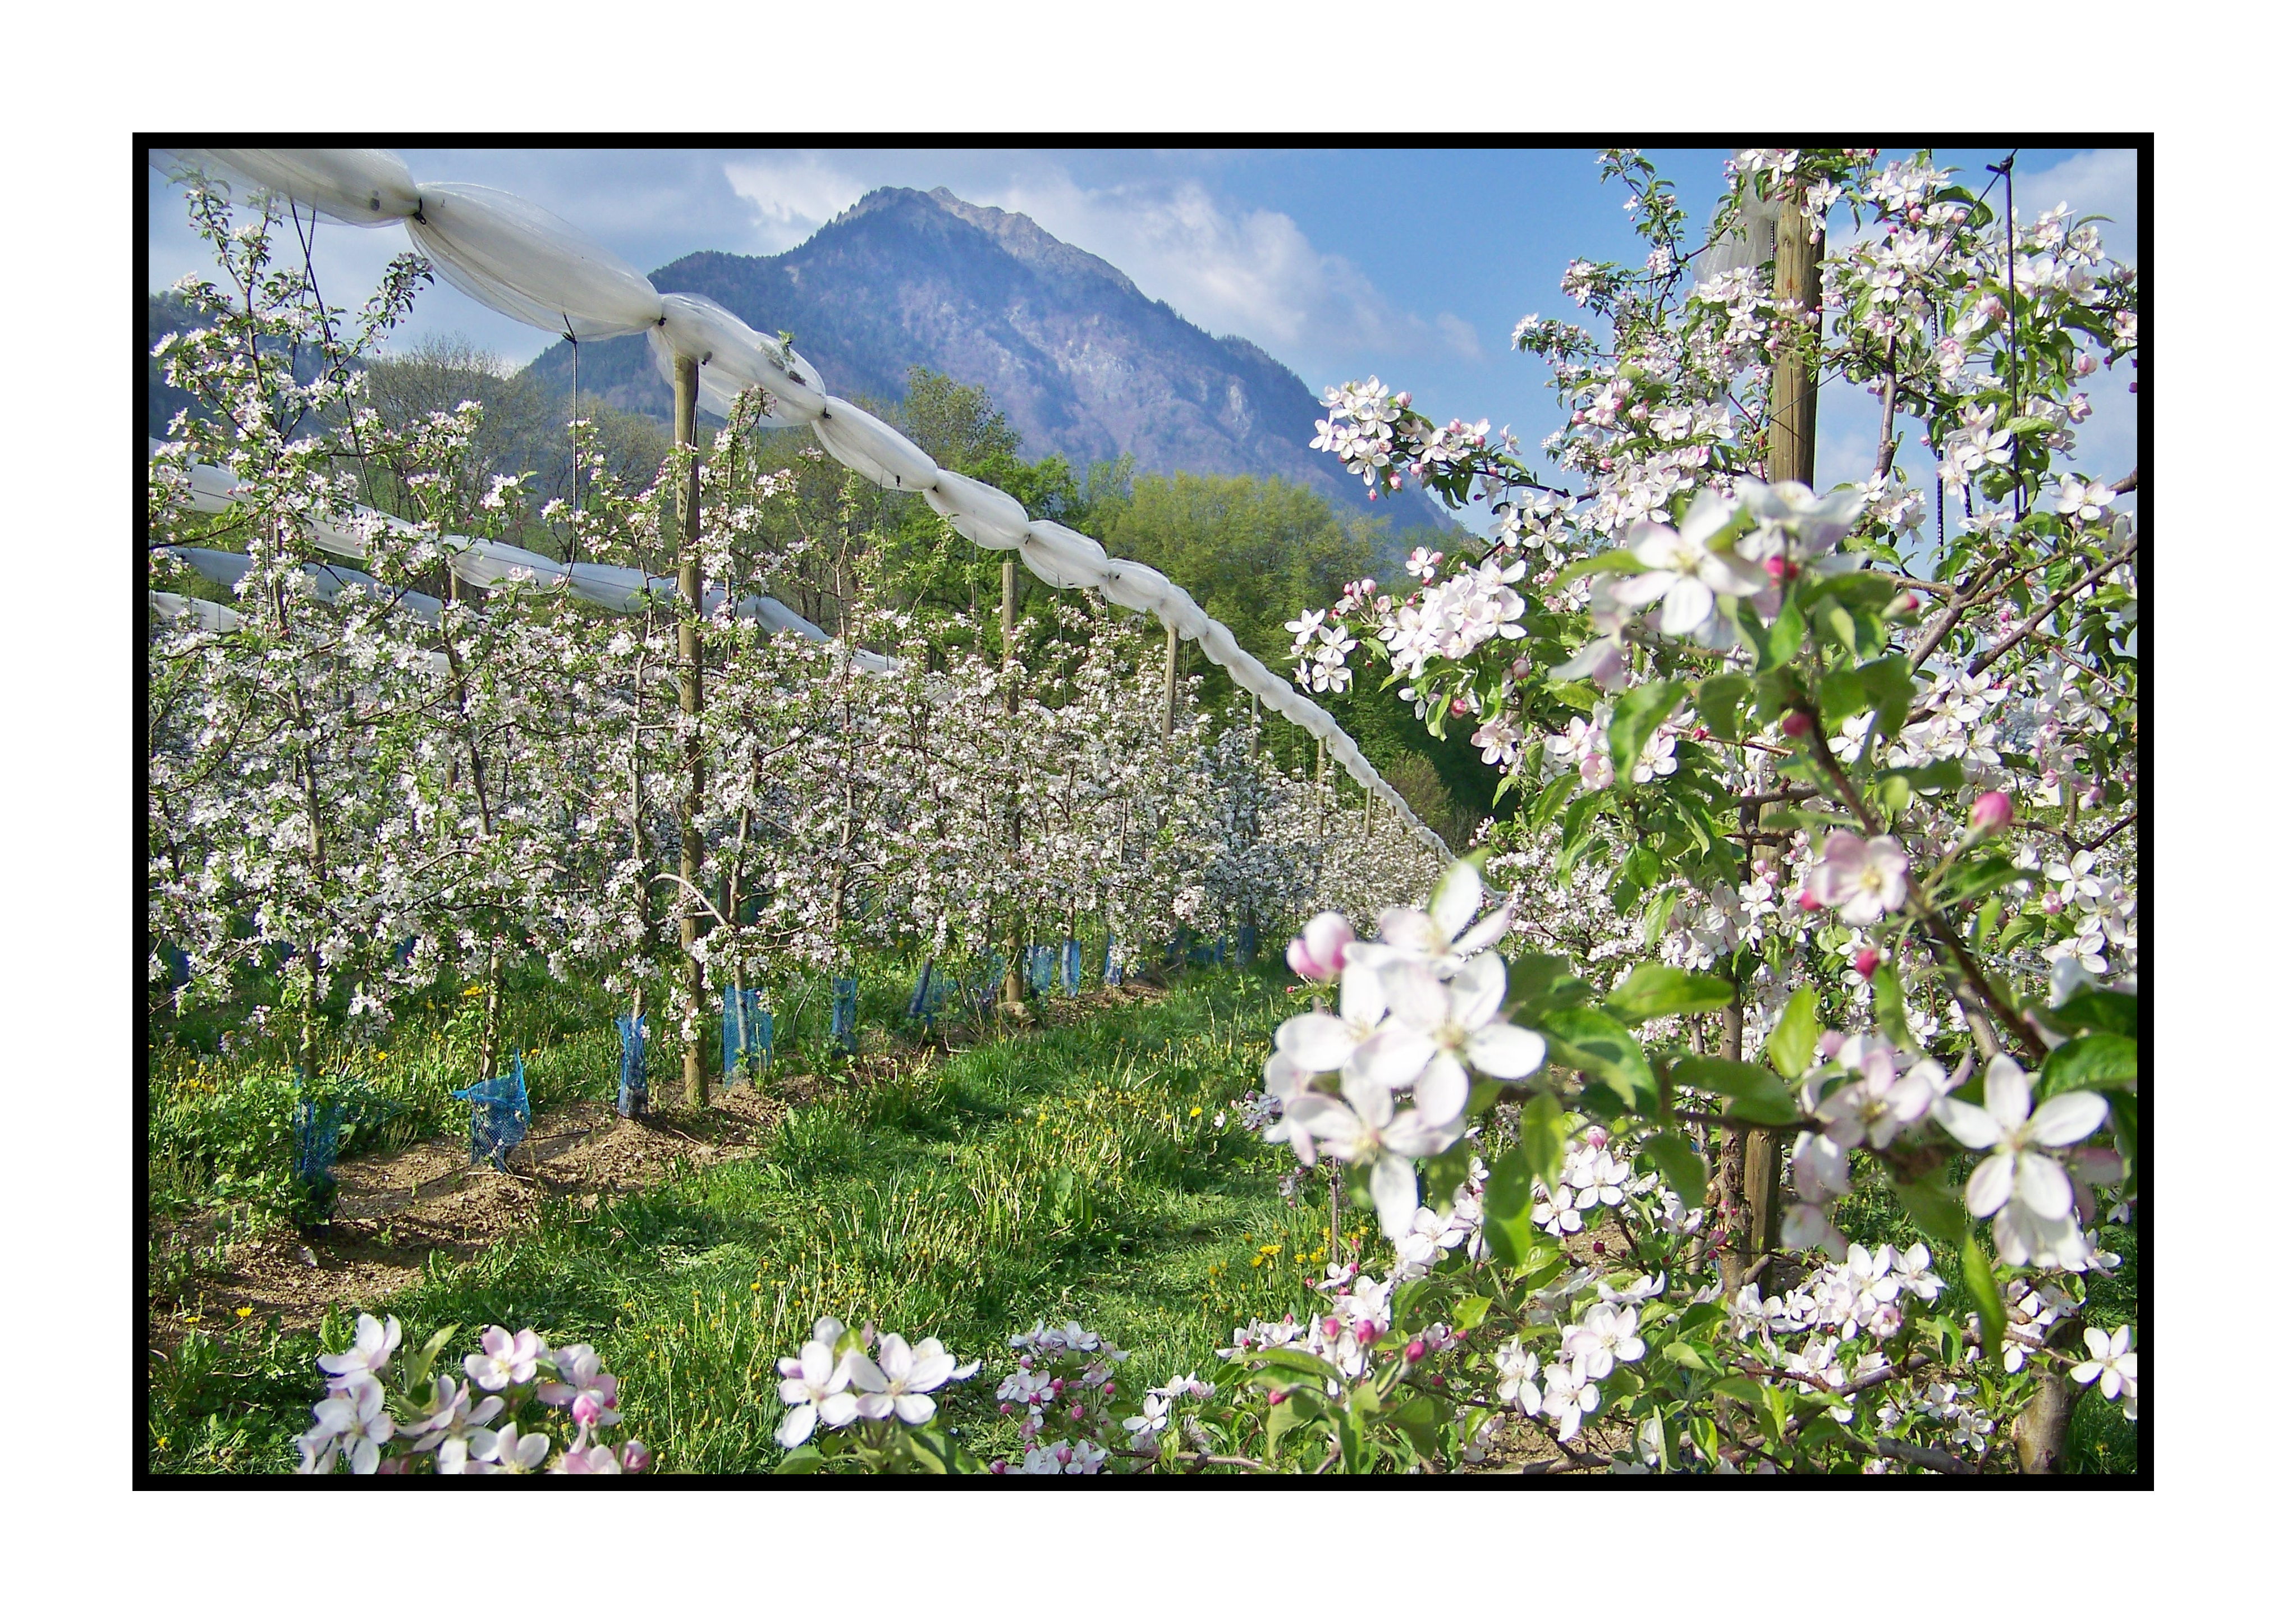 pommiers en fleur- Pommes bio- locales- arboriculteur- ferme-magasin de producteurs - Gilly sur Isère / Albertville- savoie - terroir